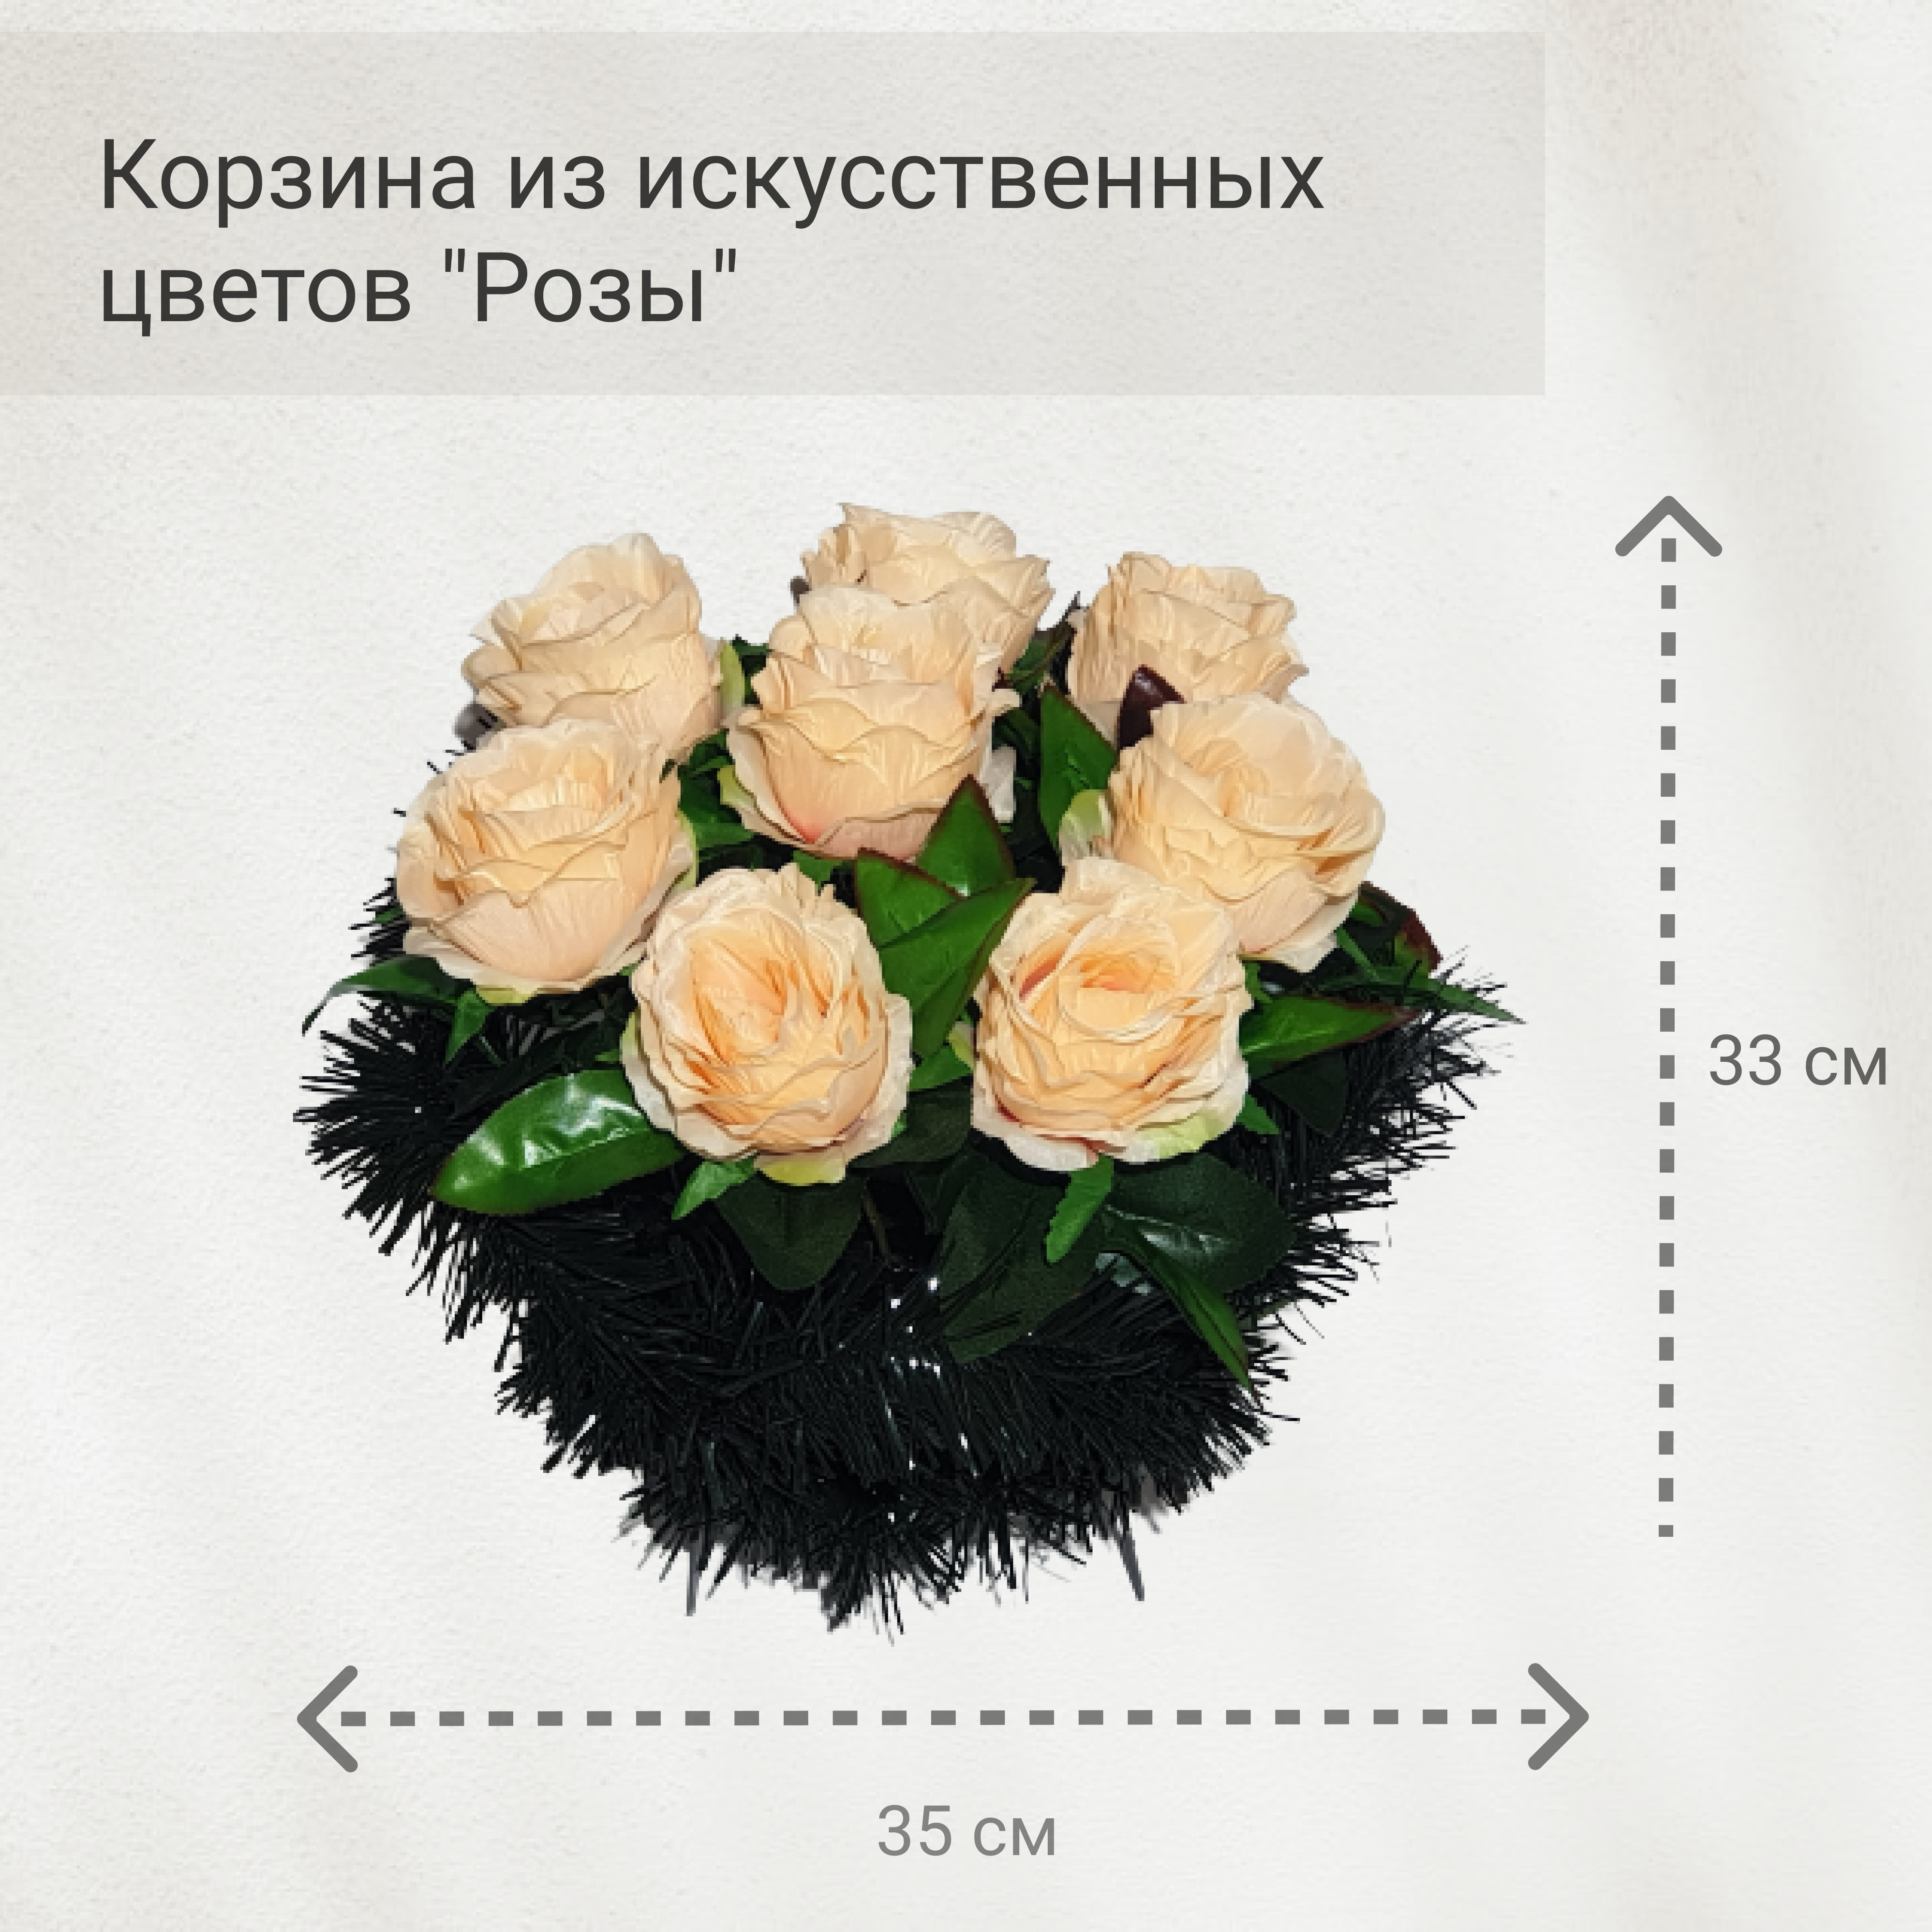 Ритуальные корзины цветов на похороны в Москве | Цены на траурные корзины на сайте